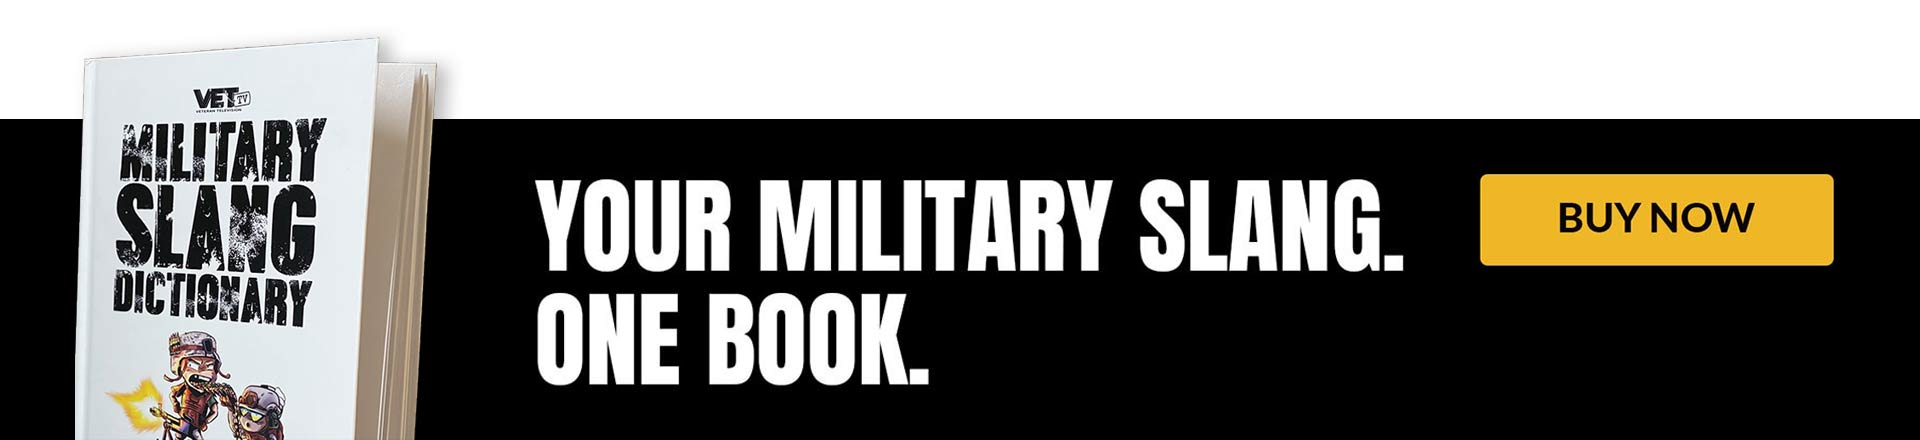 Vet-Tv-Military-Urban-Dictionary-slang-book-buy-online